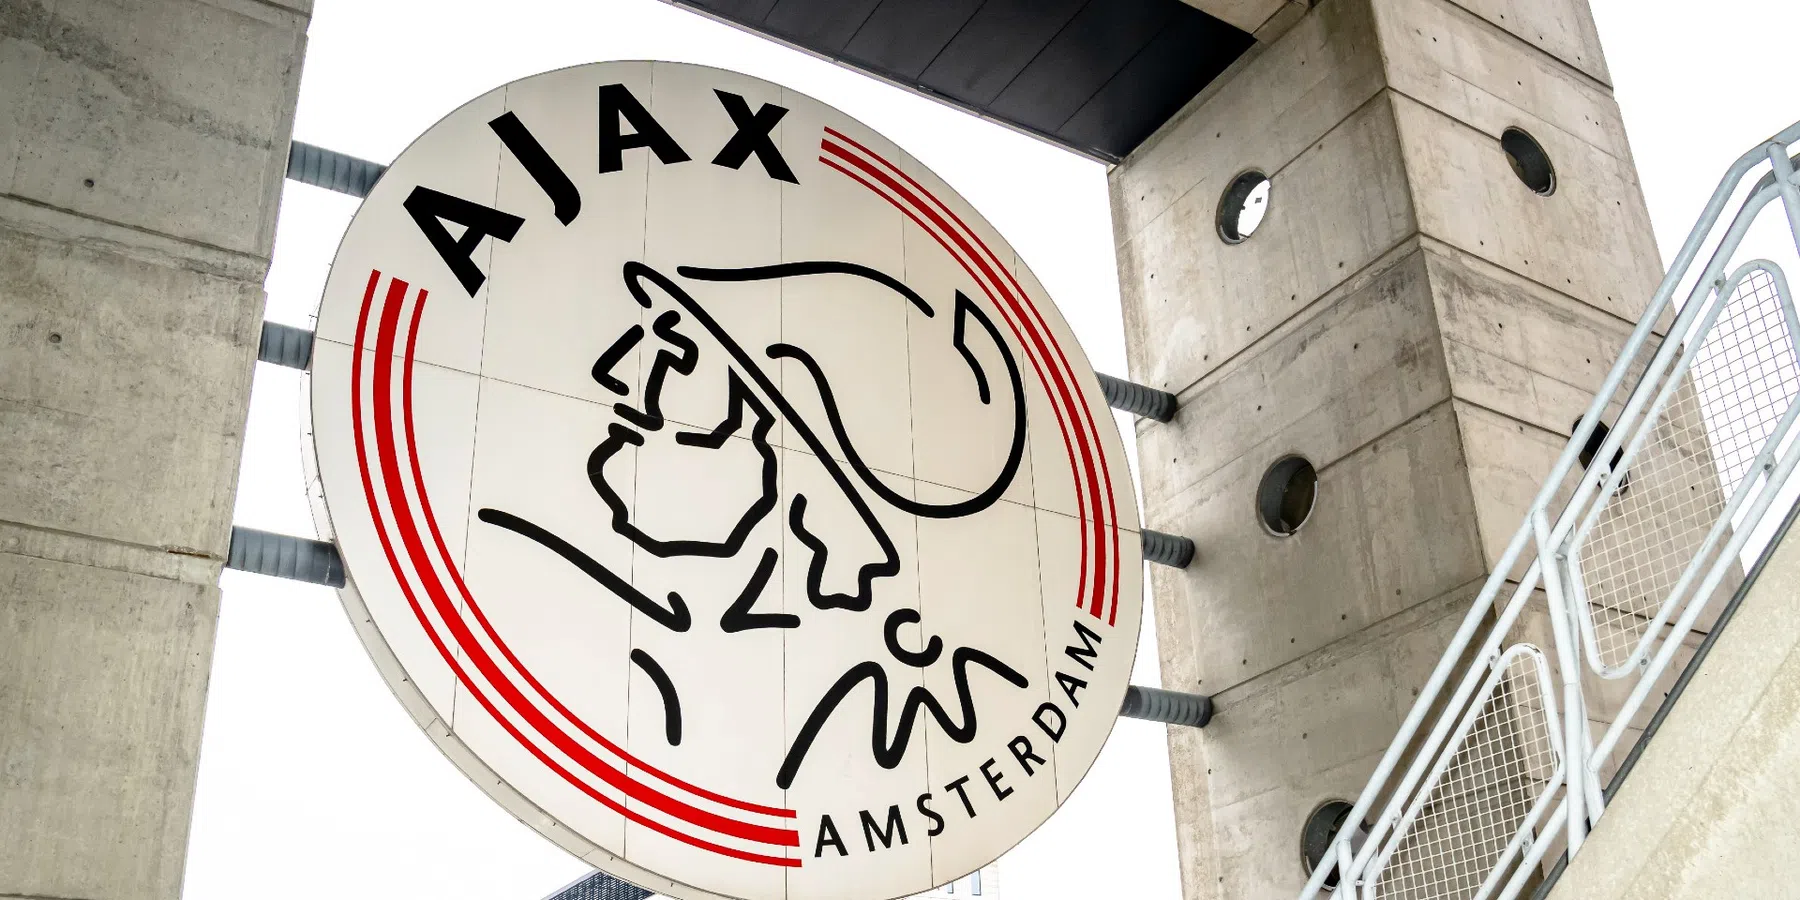 Wie is Martin Henrion, het 16-jarige Belgische keeperstalent waar Ajax naar kijkt?